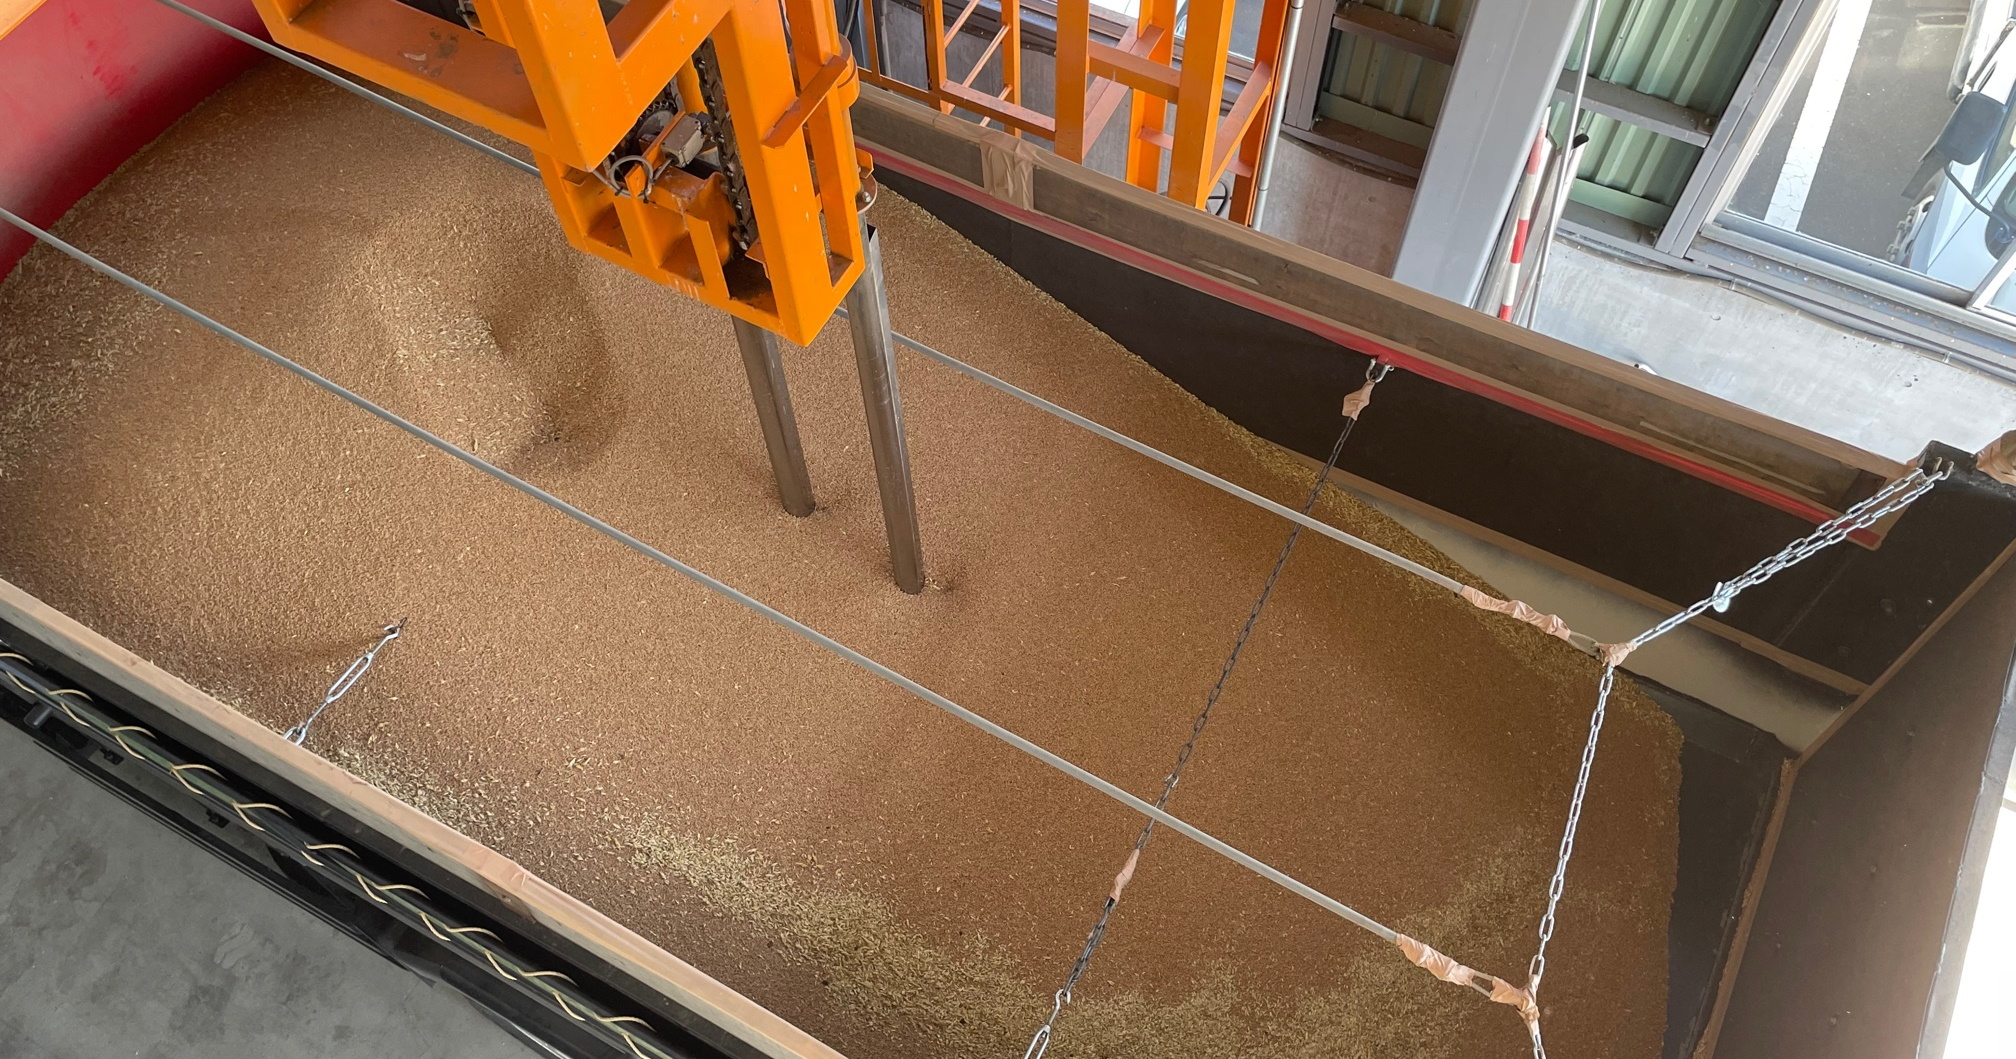 収穫された小麦が乾燥工場へ運ばれてからの様子をご紹介します